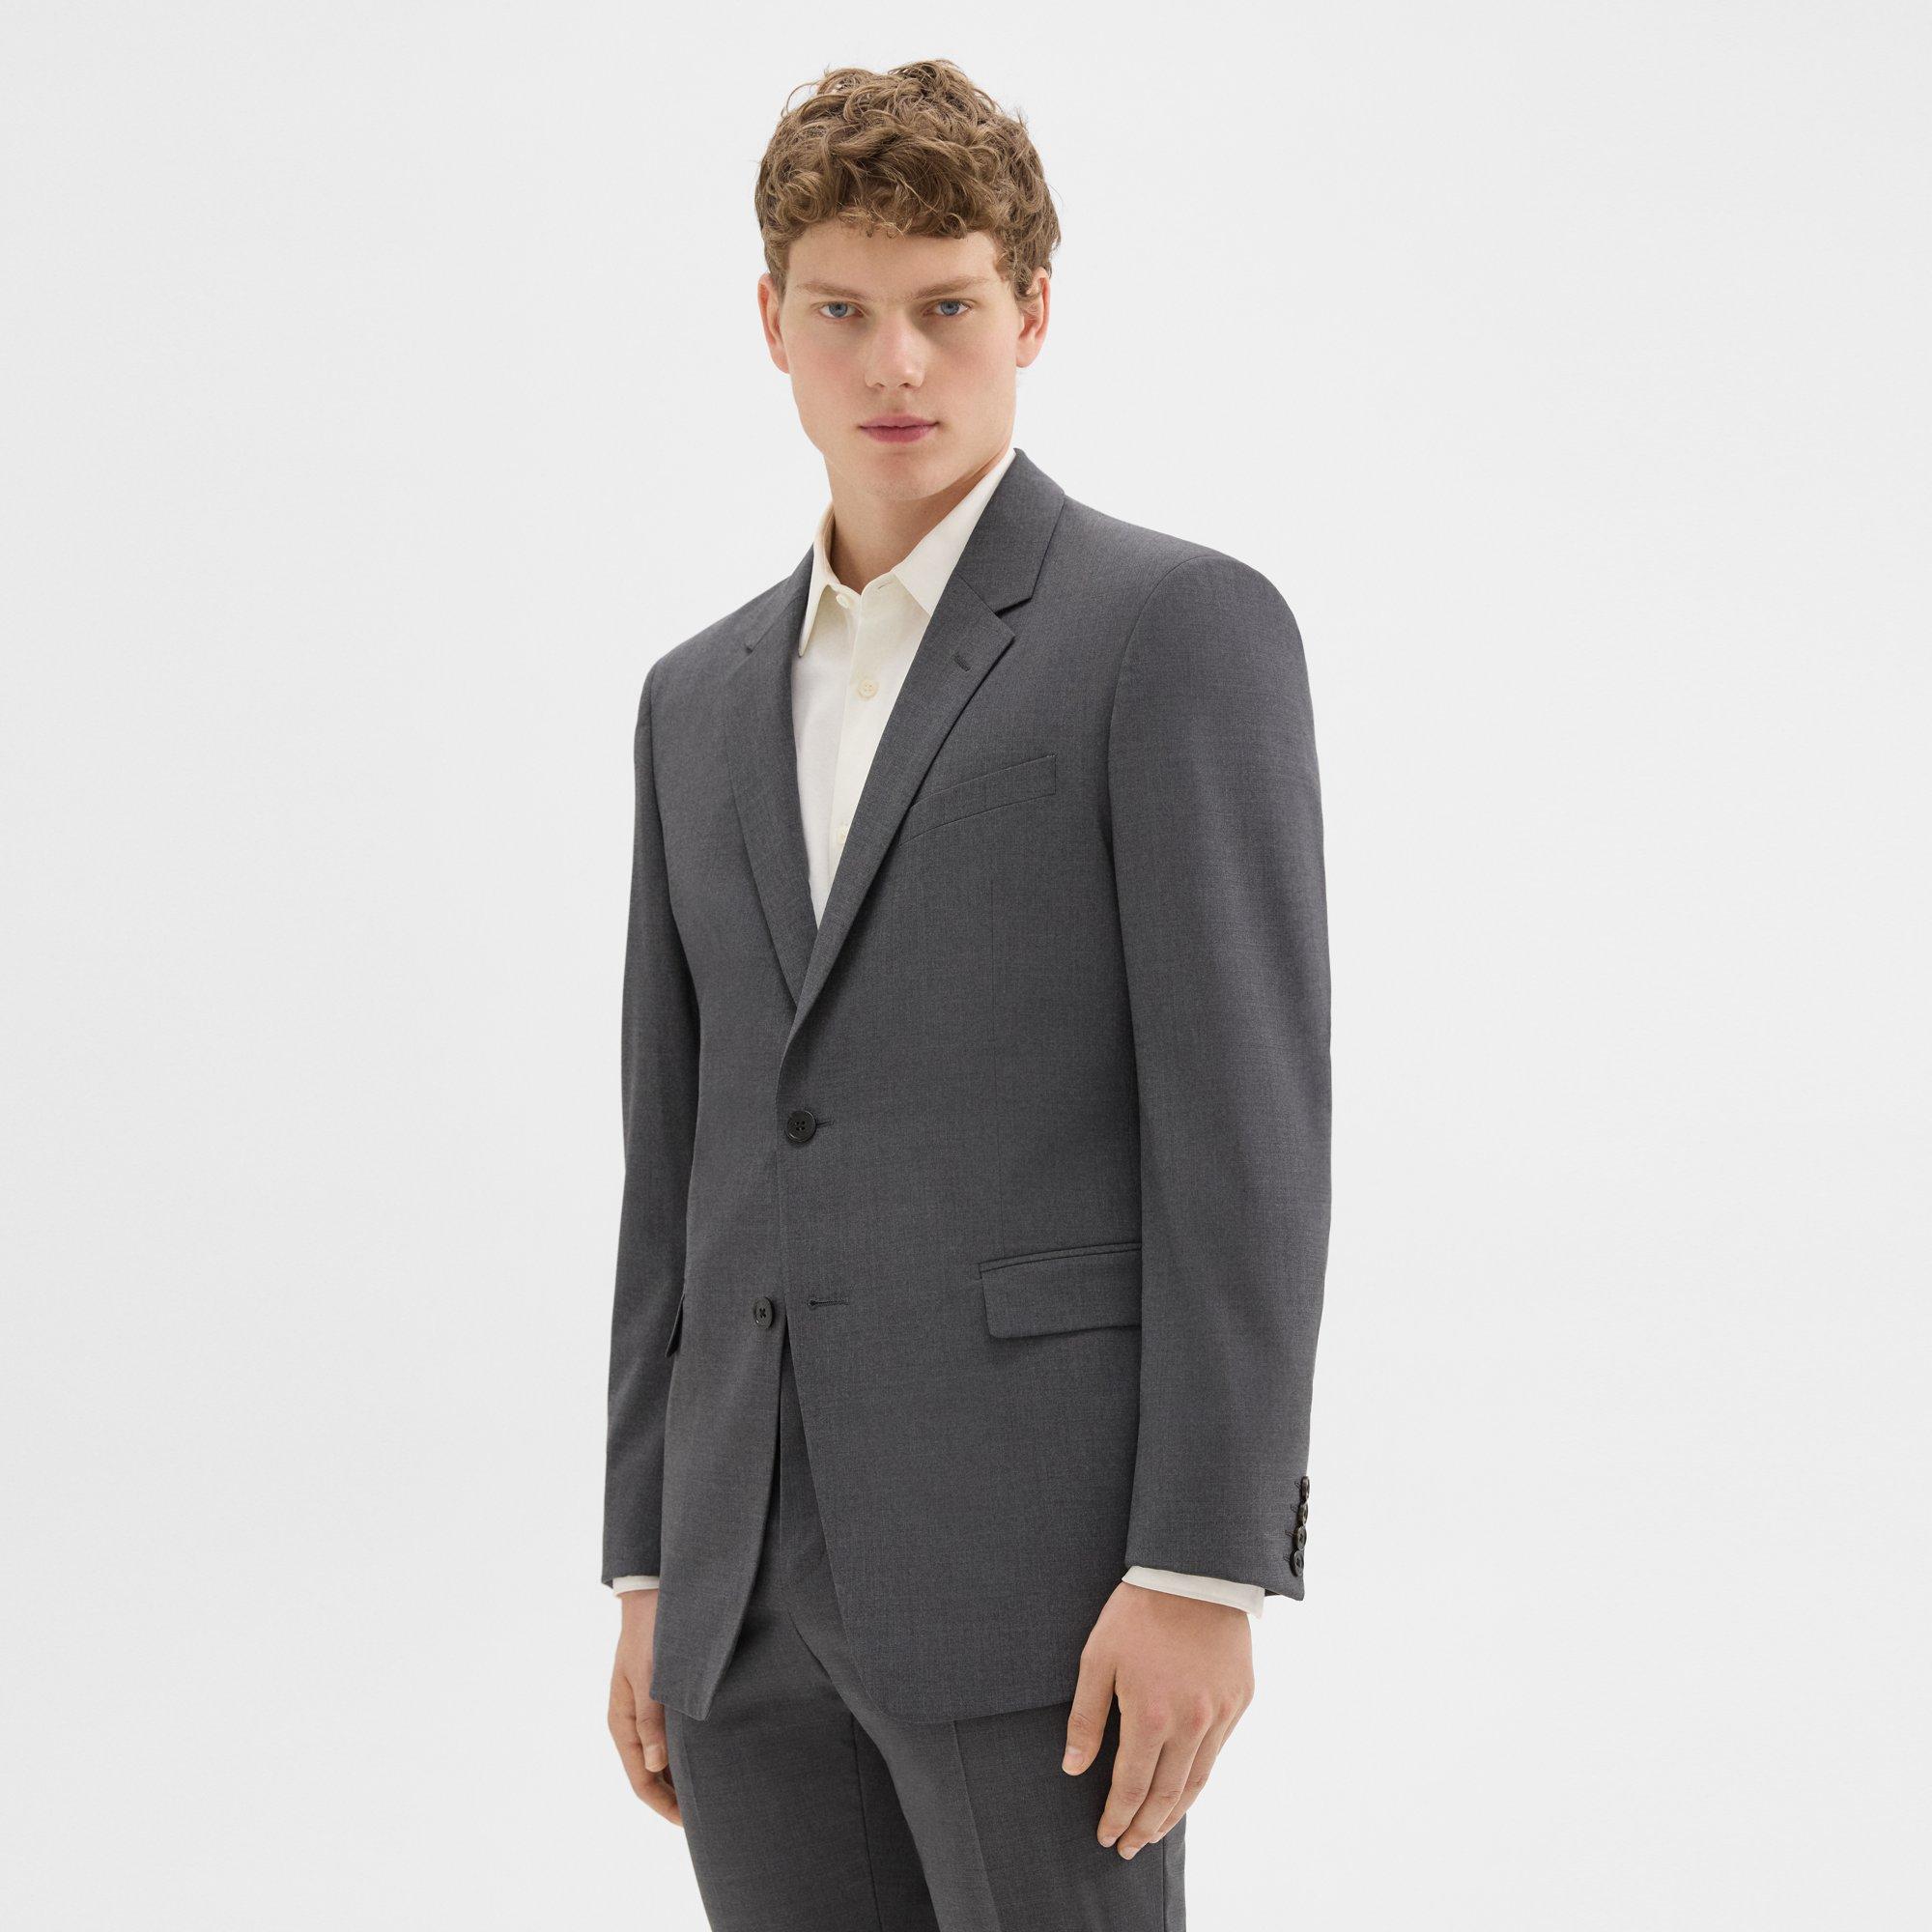 Autonomy blazer jacket grey Size: 18